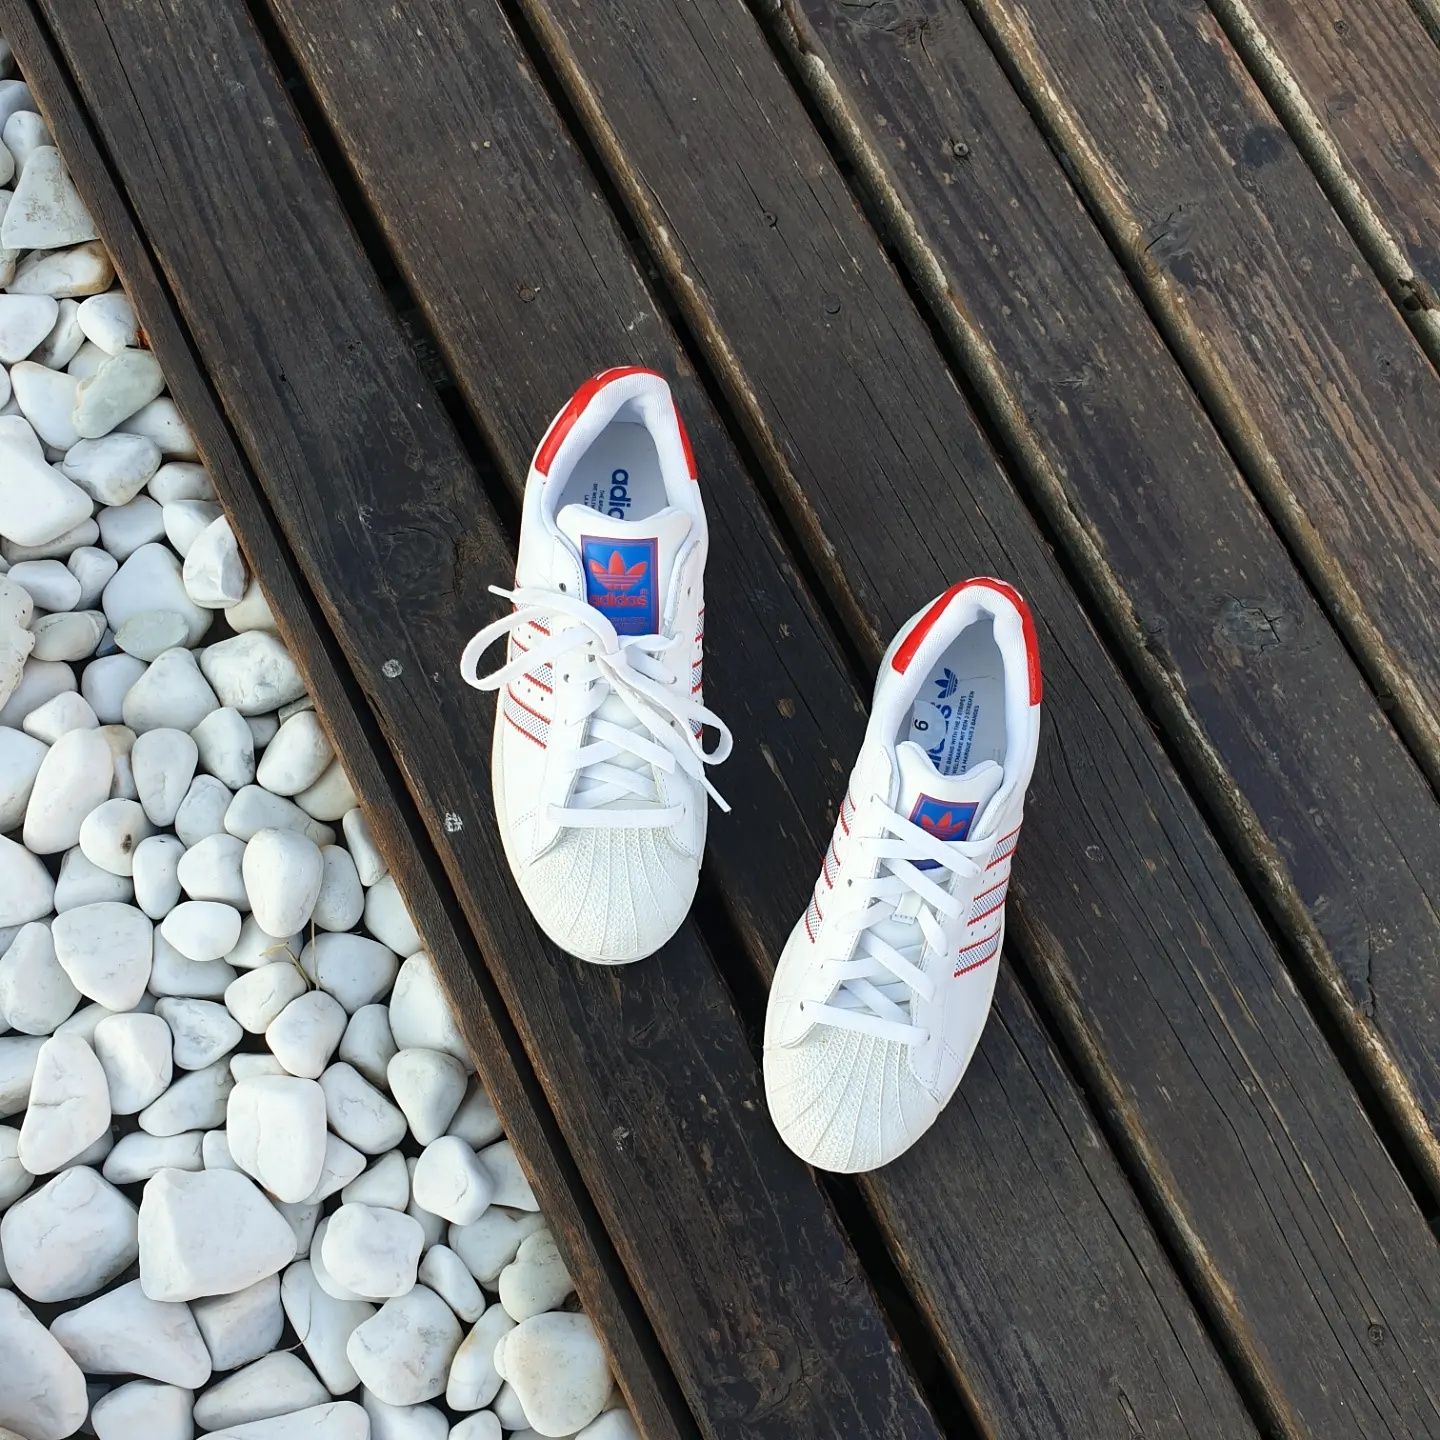 Кецове Adidas маратонки естествена кожа номер 41 бял цвят стелка 26см.